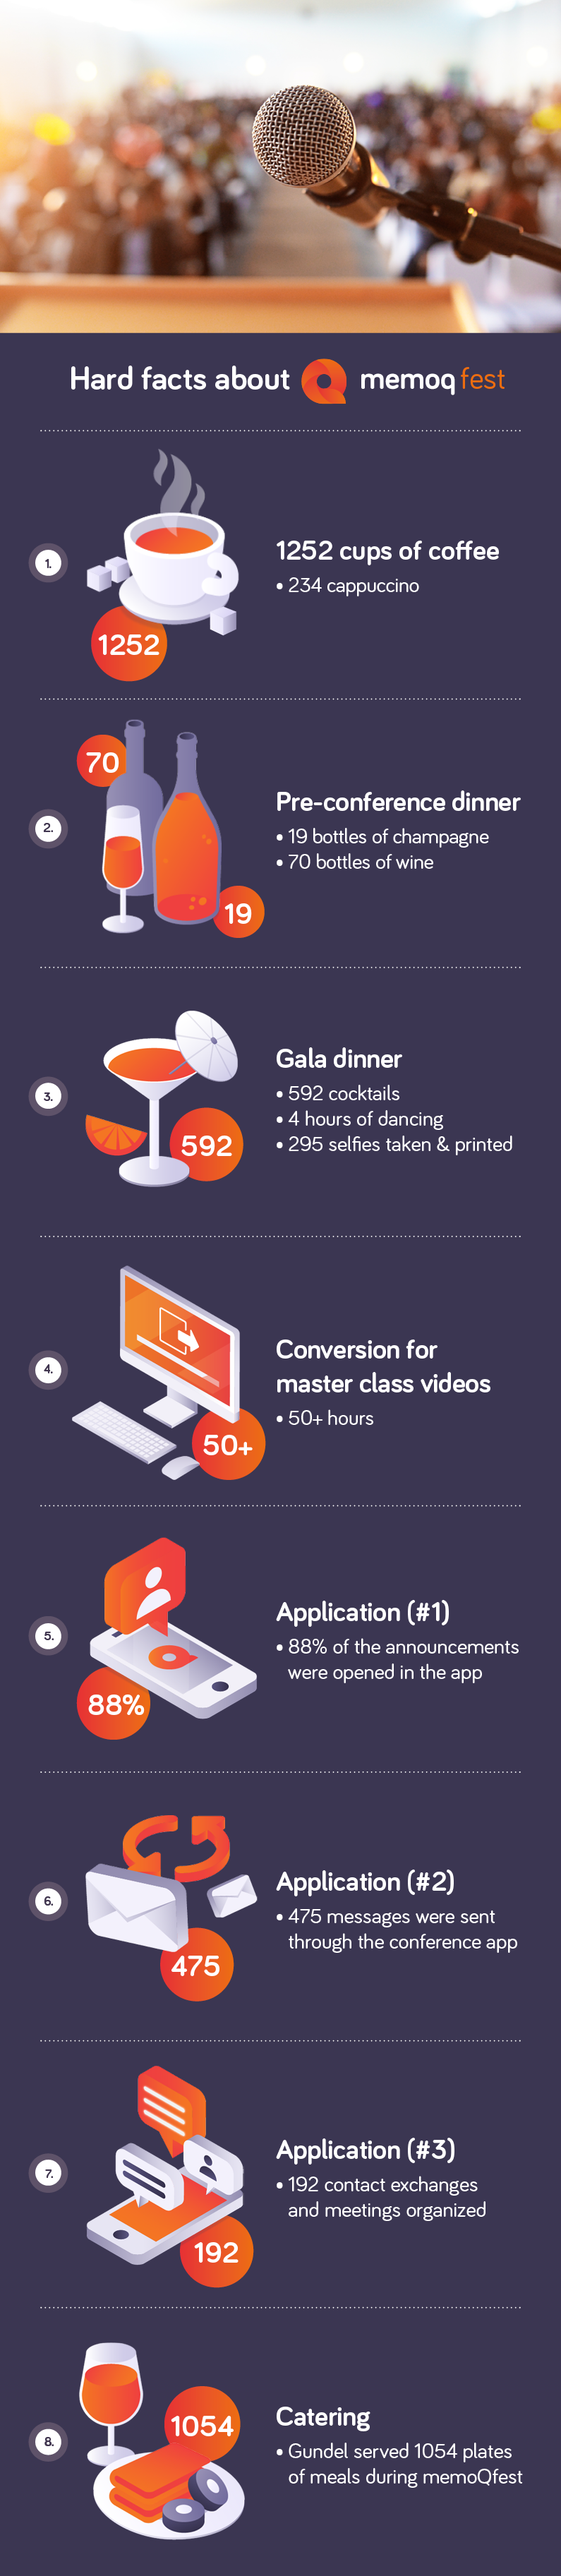 memoqfest infographic